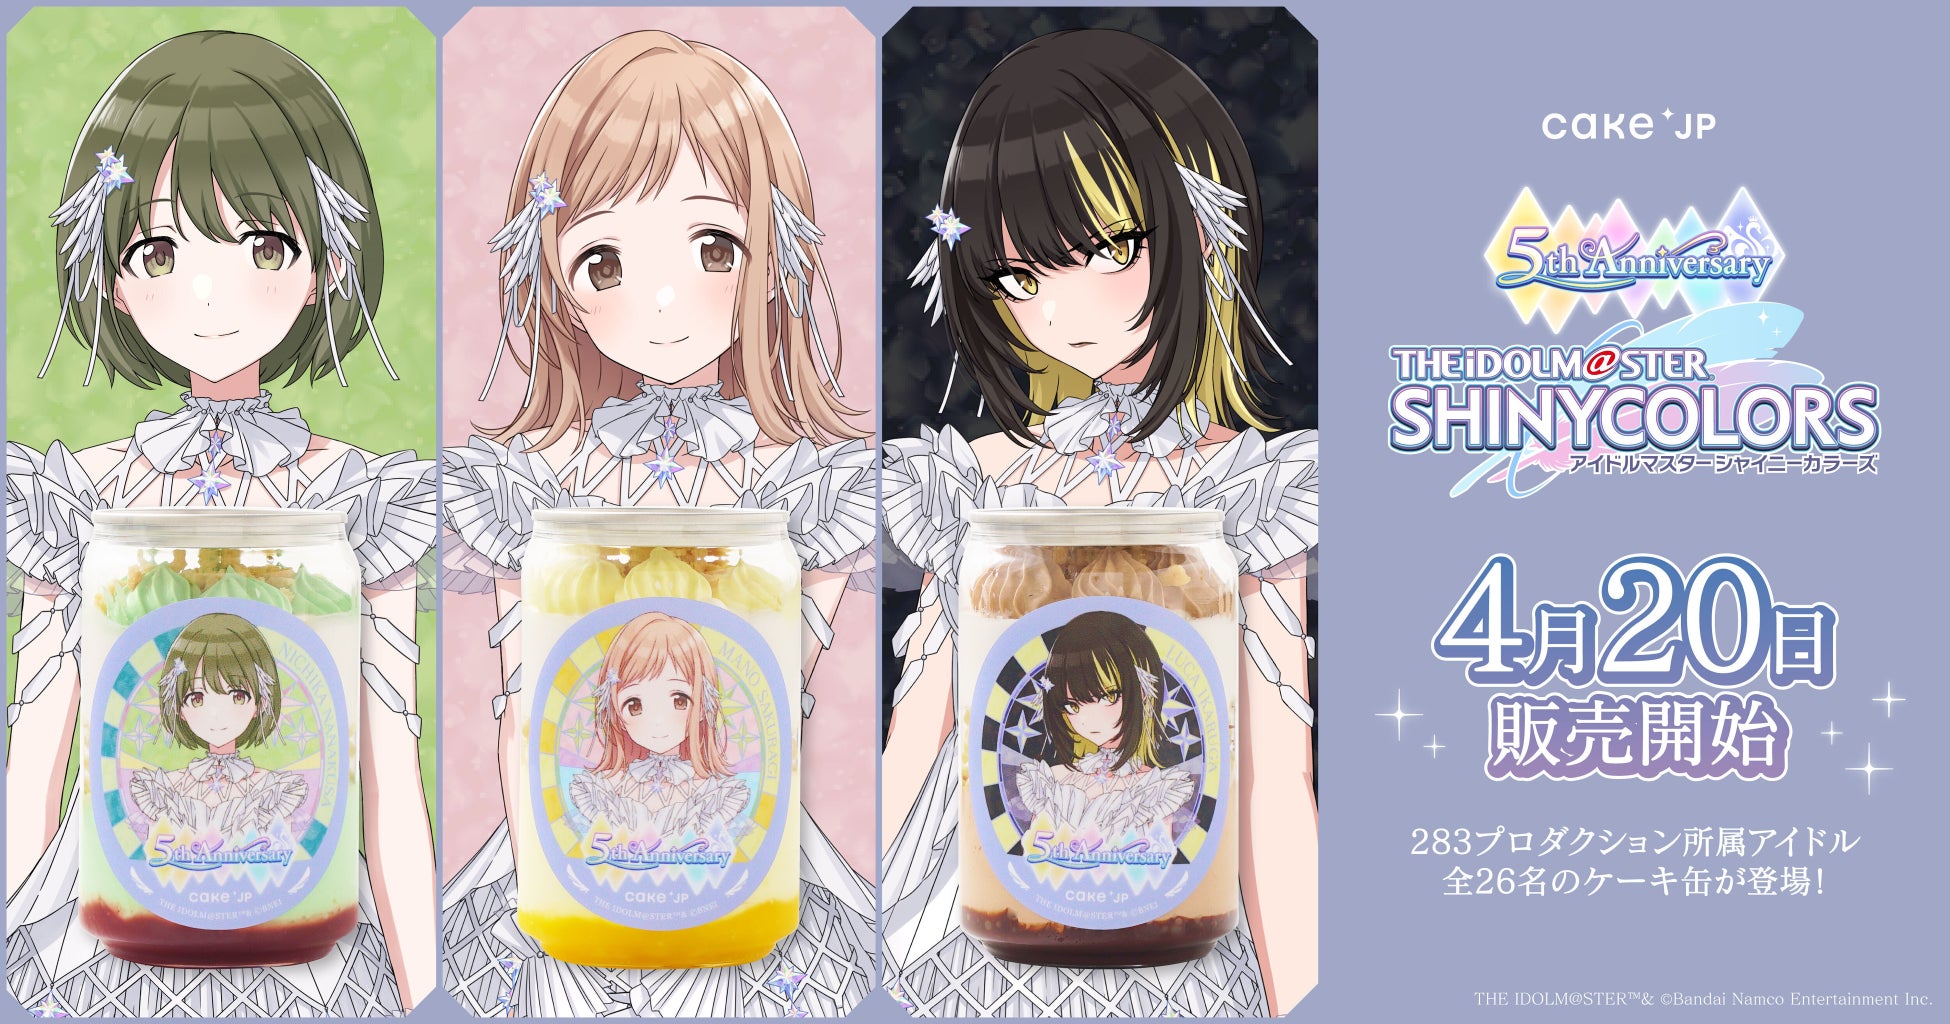 アイドルマスター シャイニーカラーズ×Cake.jp、5周年を記念して、283プロダクション所属アイドルの全26名のケーキ缶が登場！